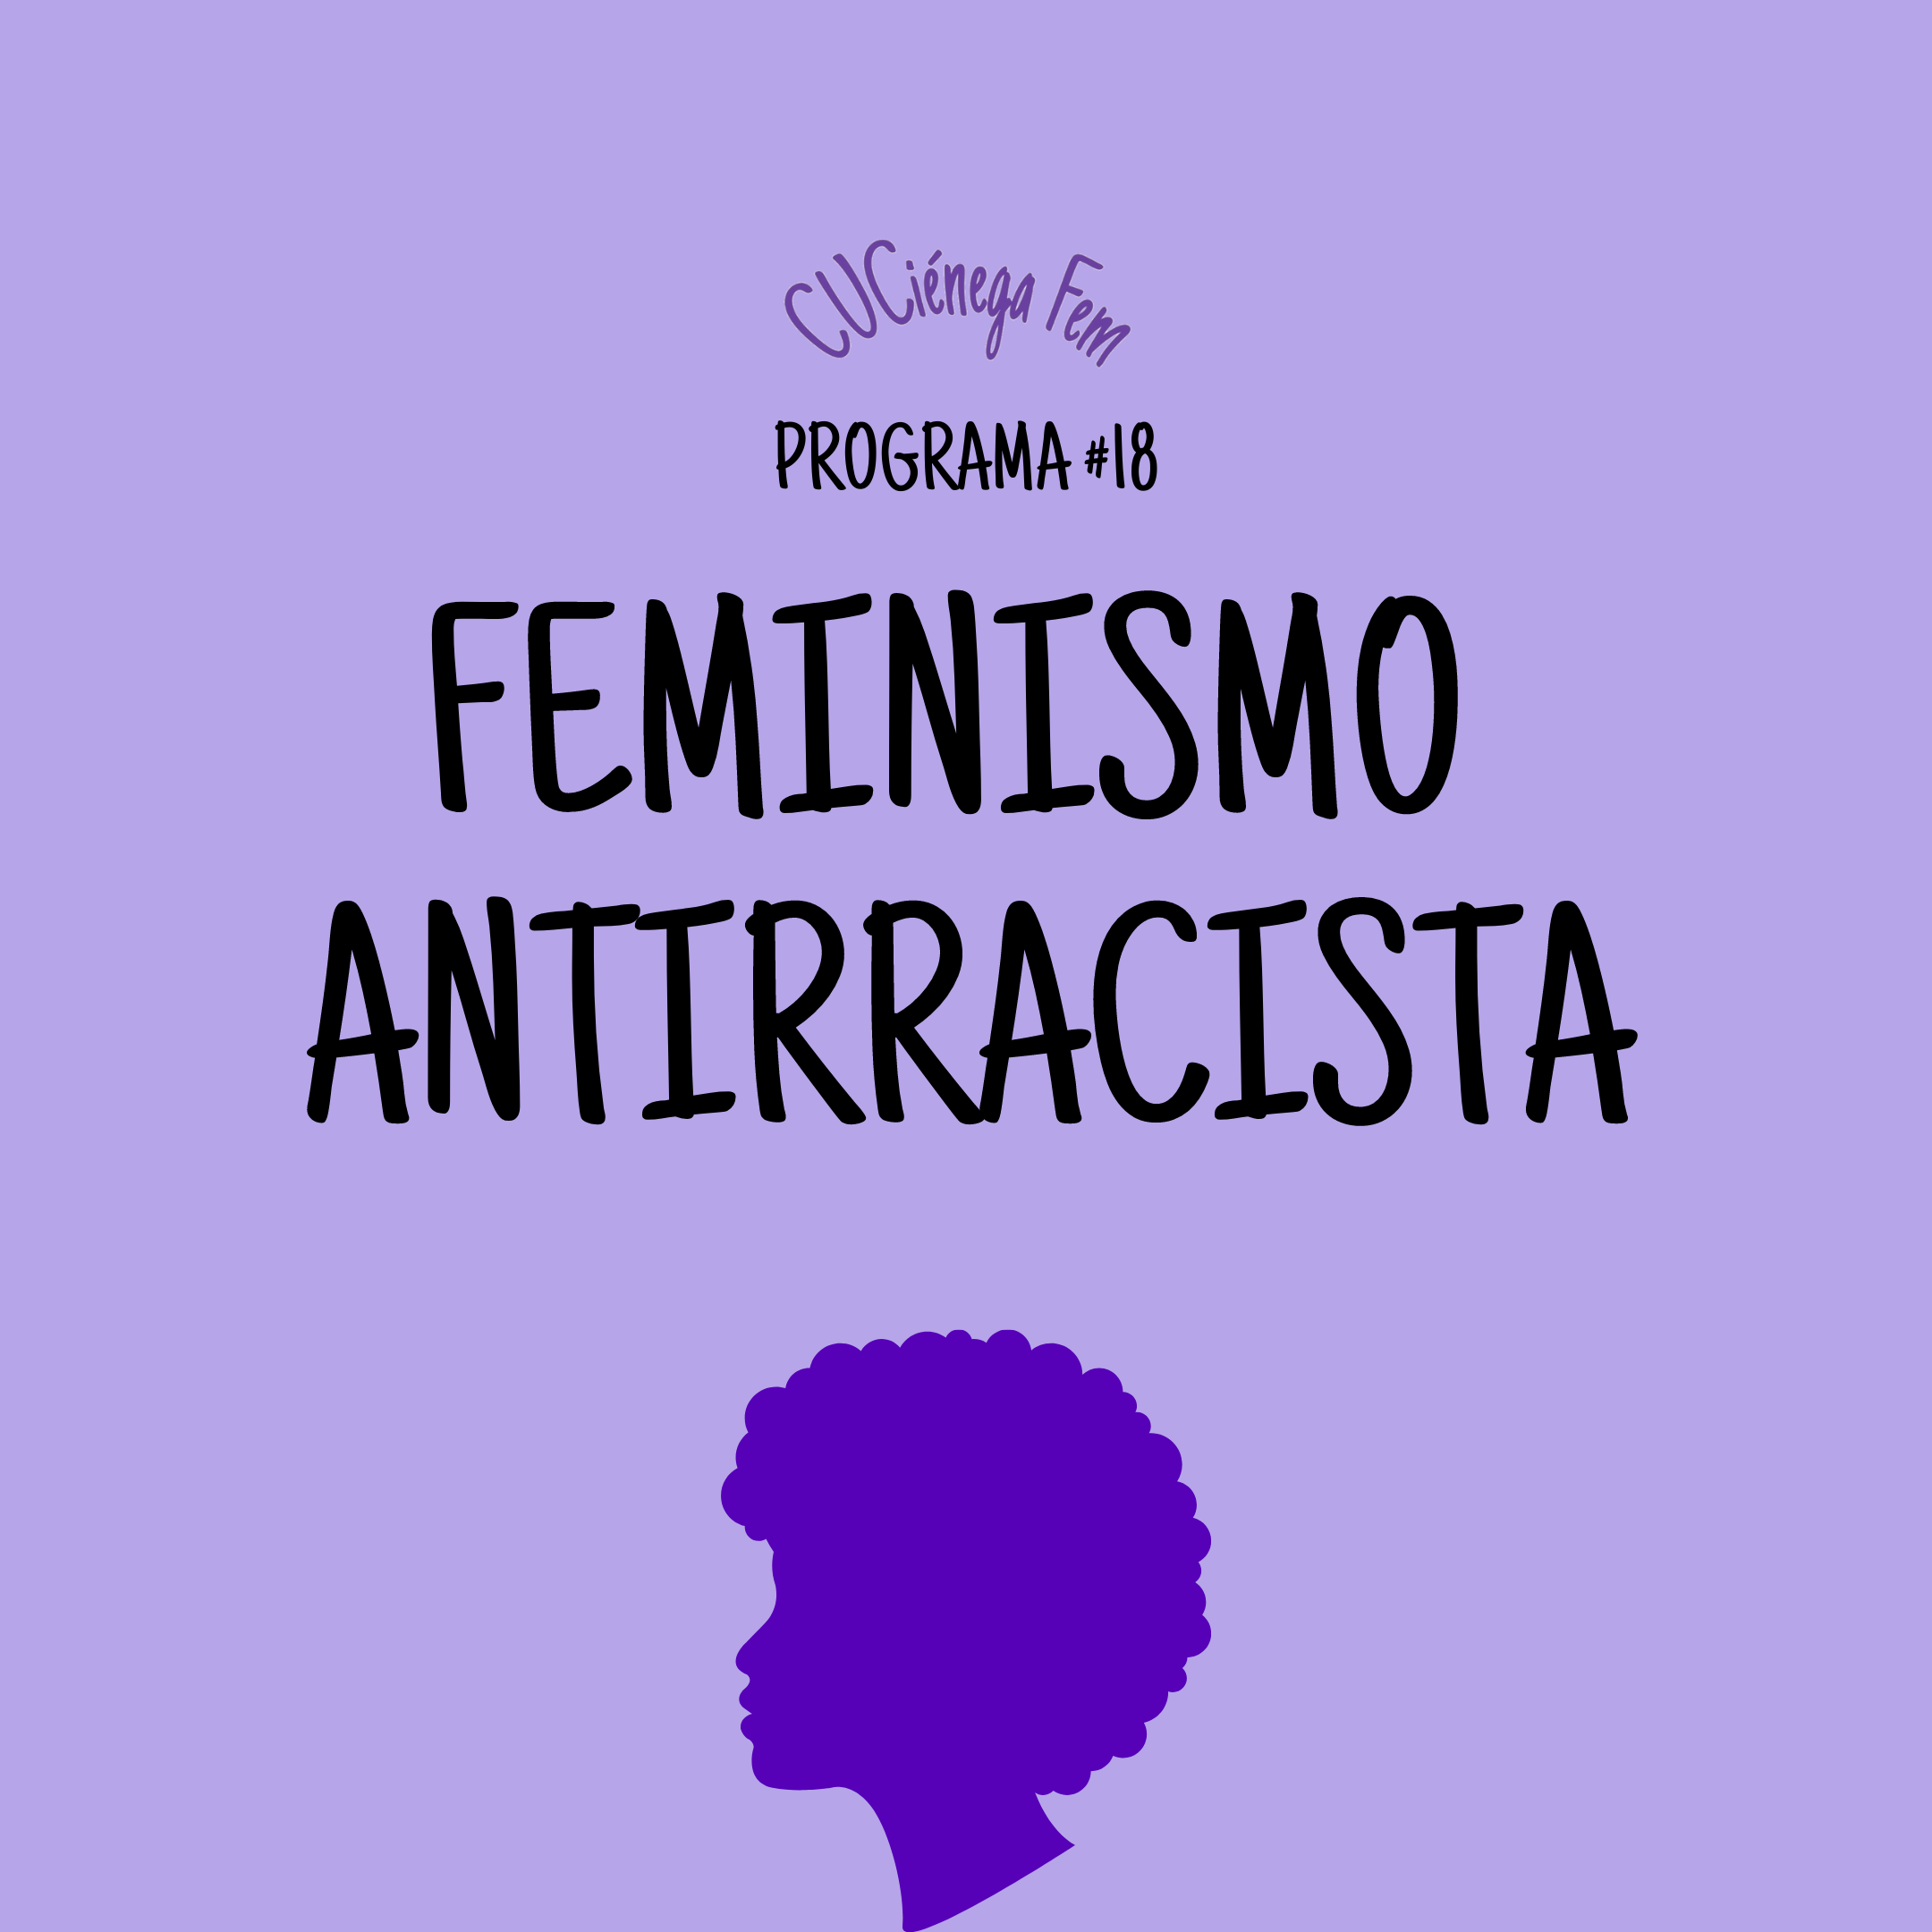 Cuciénega Fem | Feminismo Antirracista